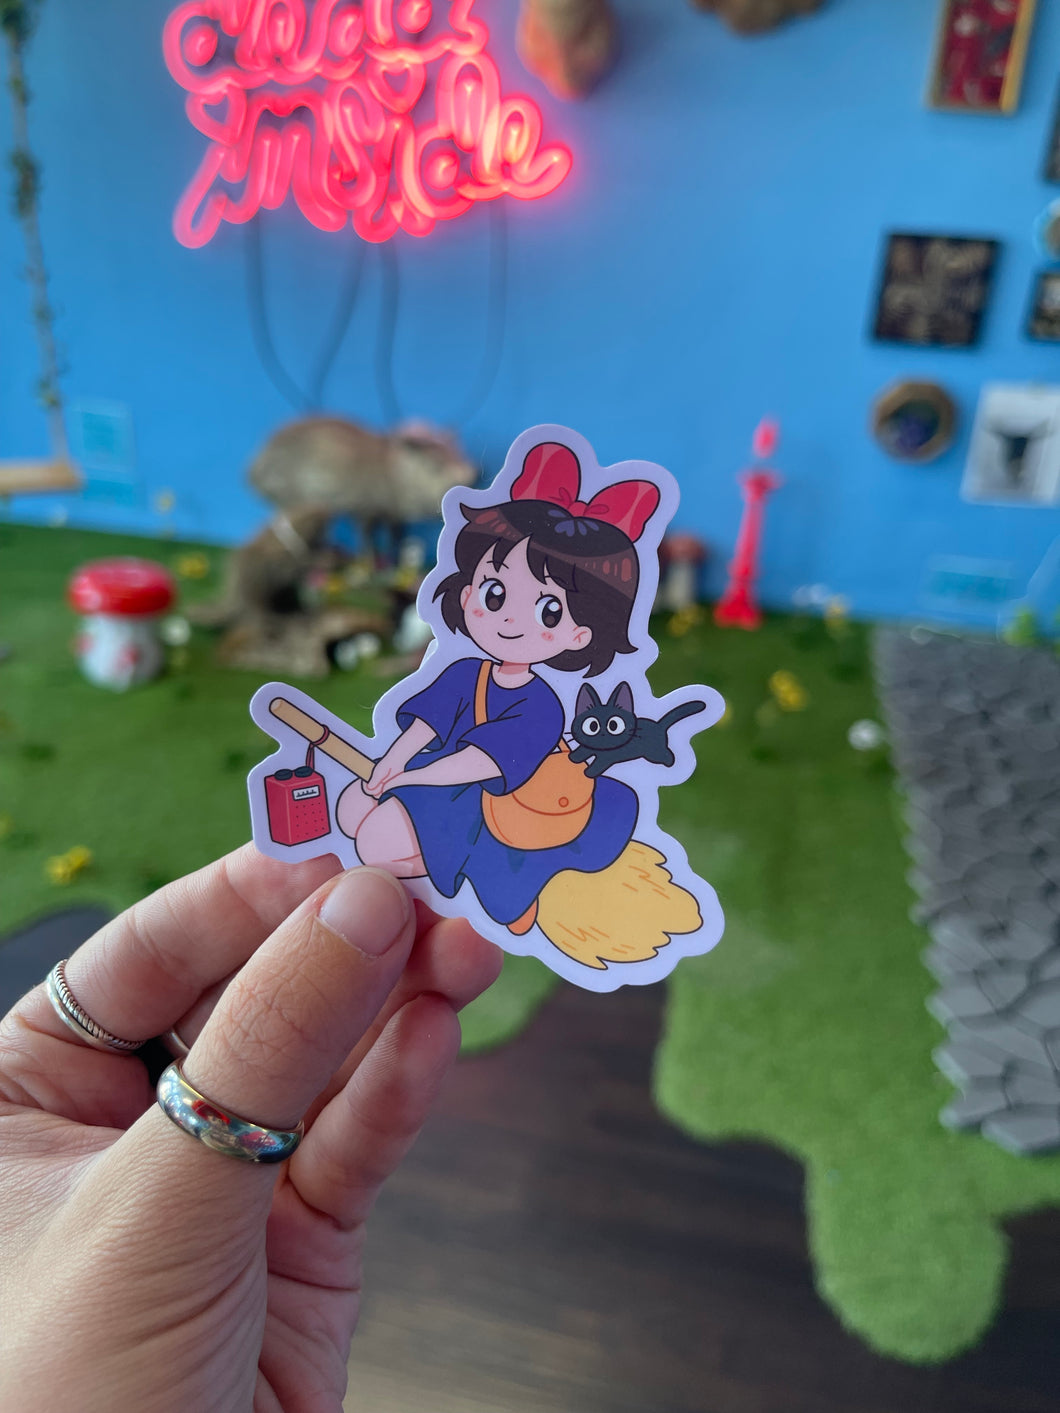 Kiki sticker by Nana